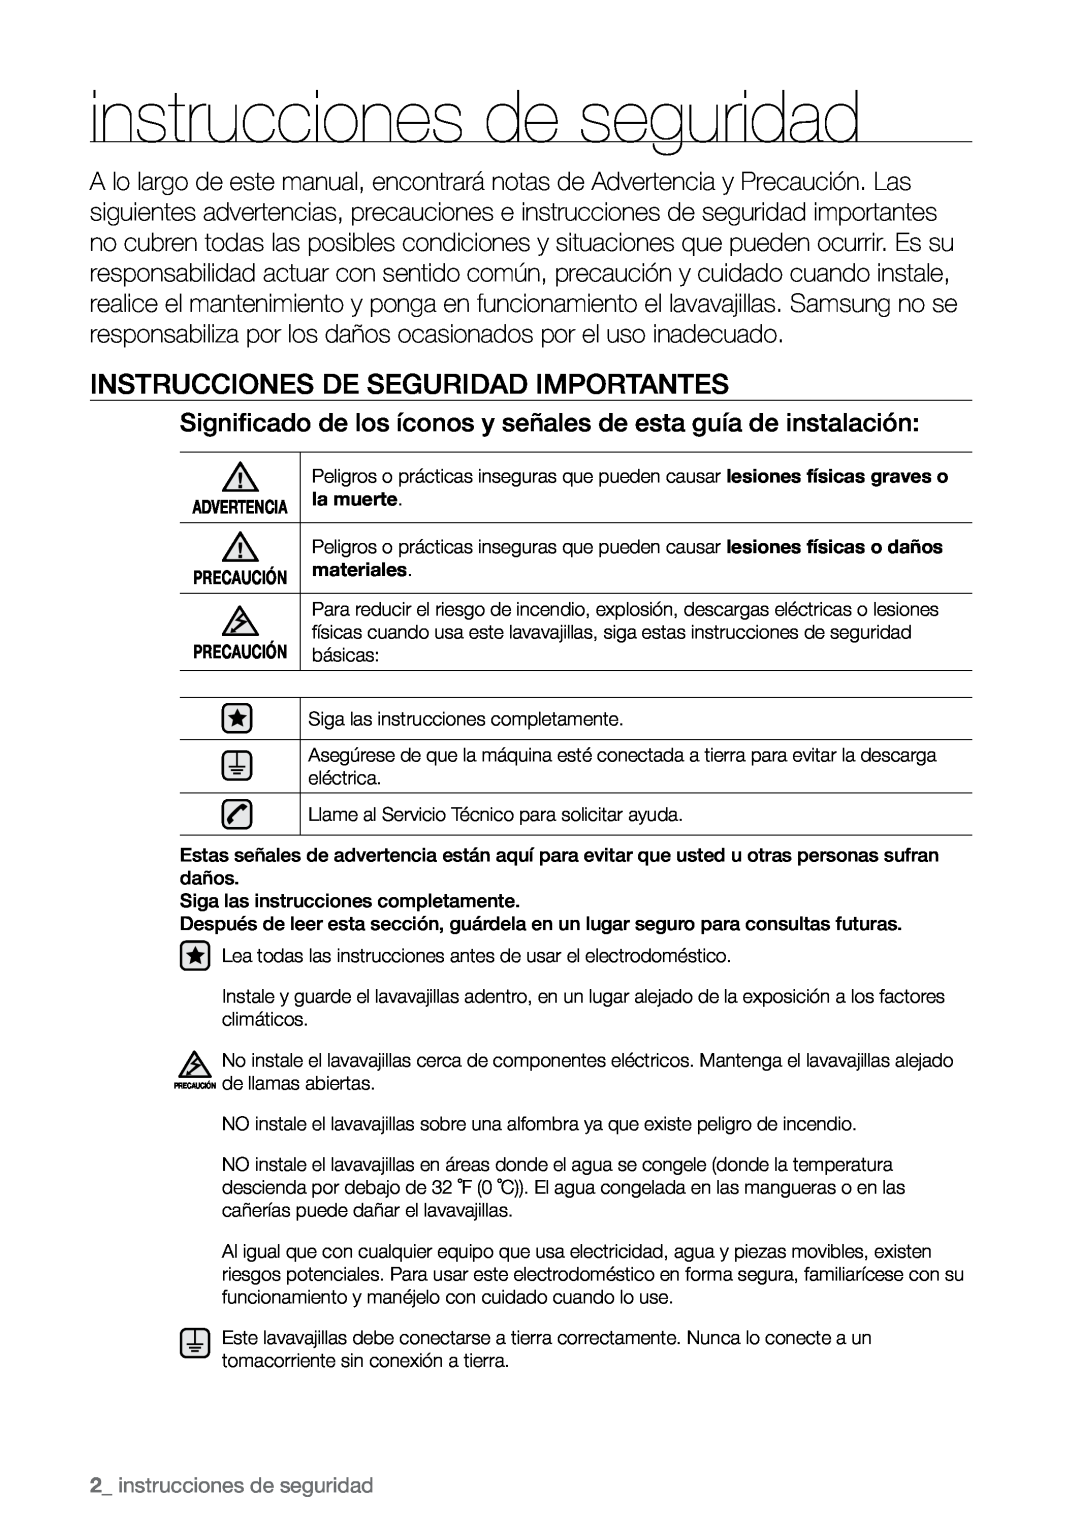 Samsung DMR77, DMR78, DMR57 manual Instrucciones de seguridad importantes,  instrucciones de seguridad 